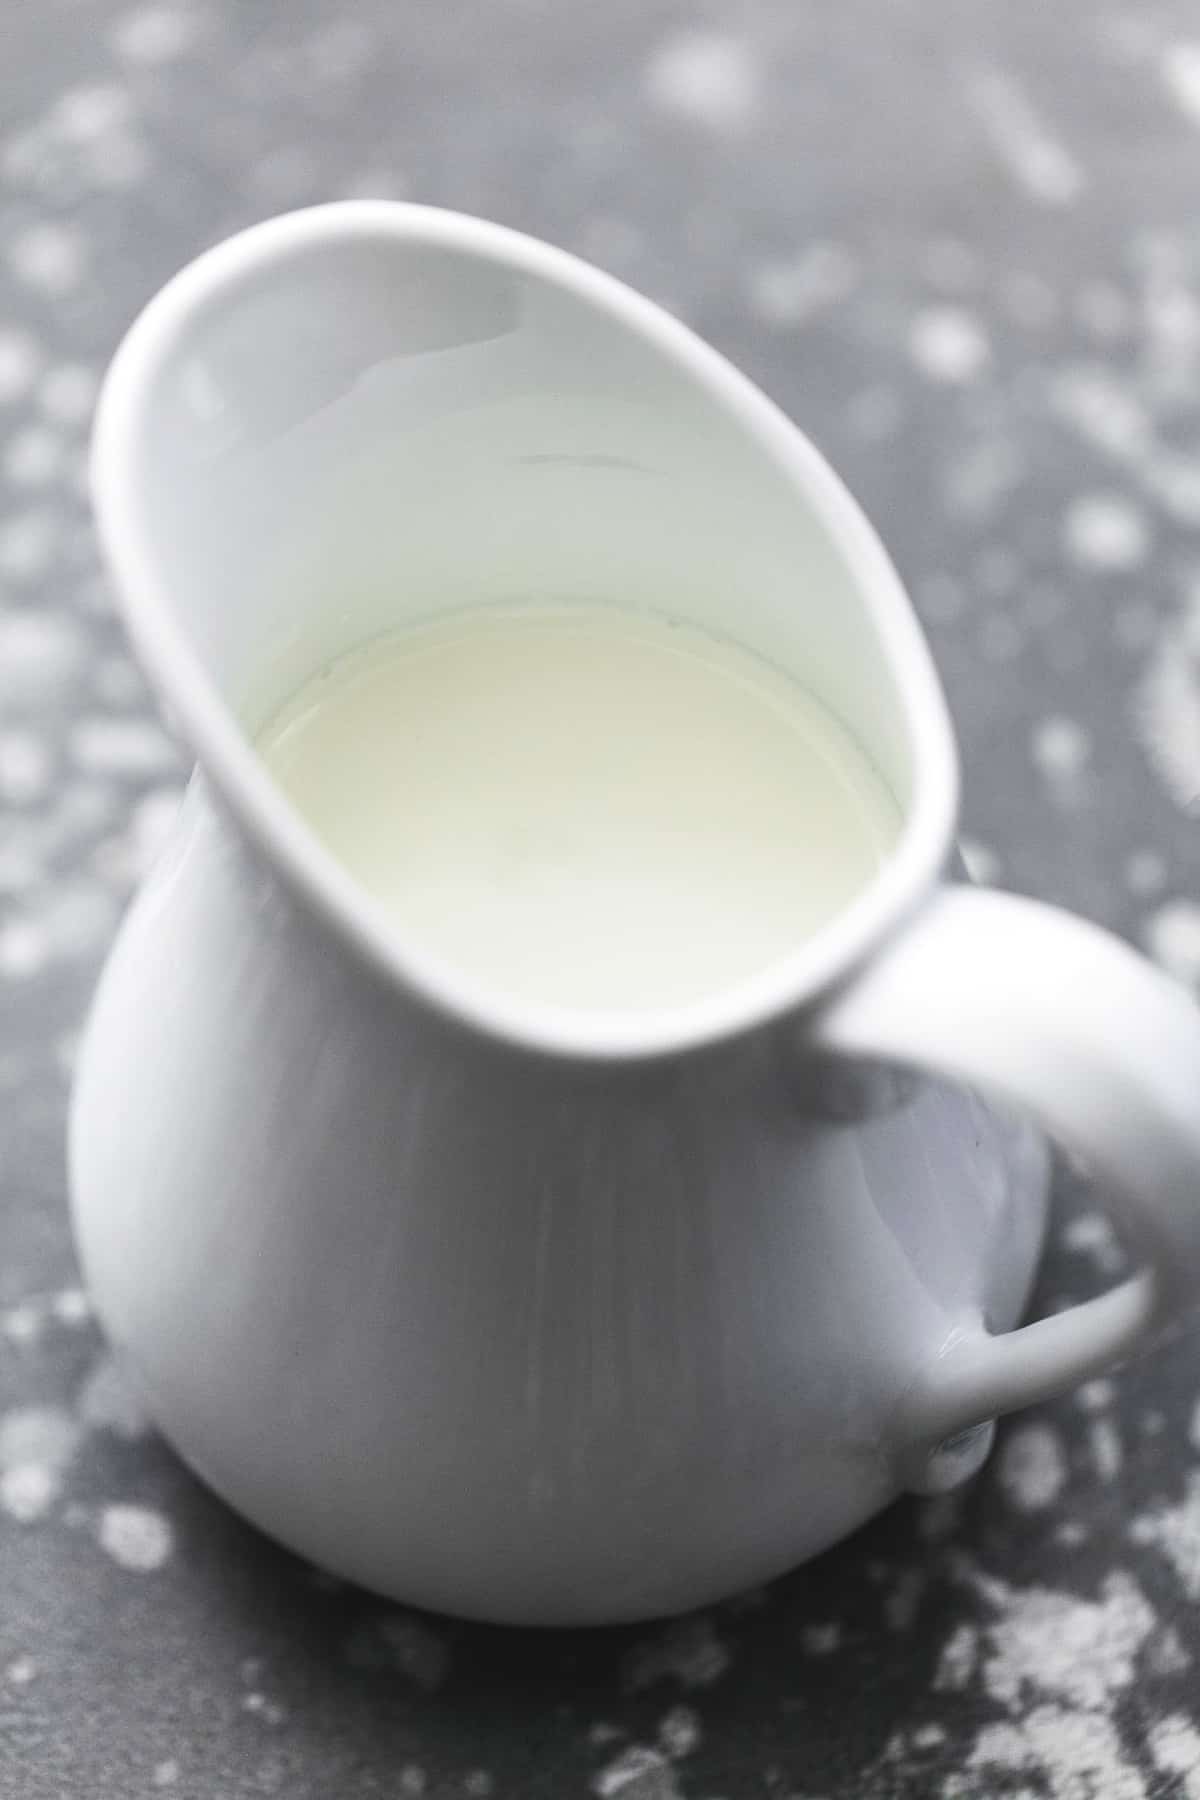 milk in a white pitcher.